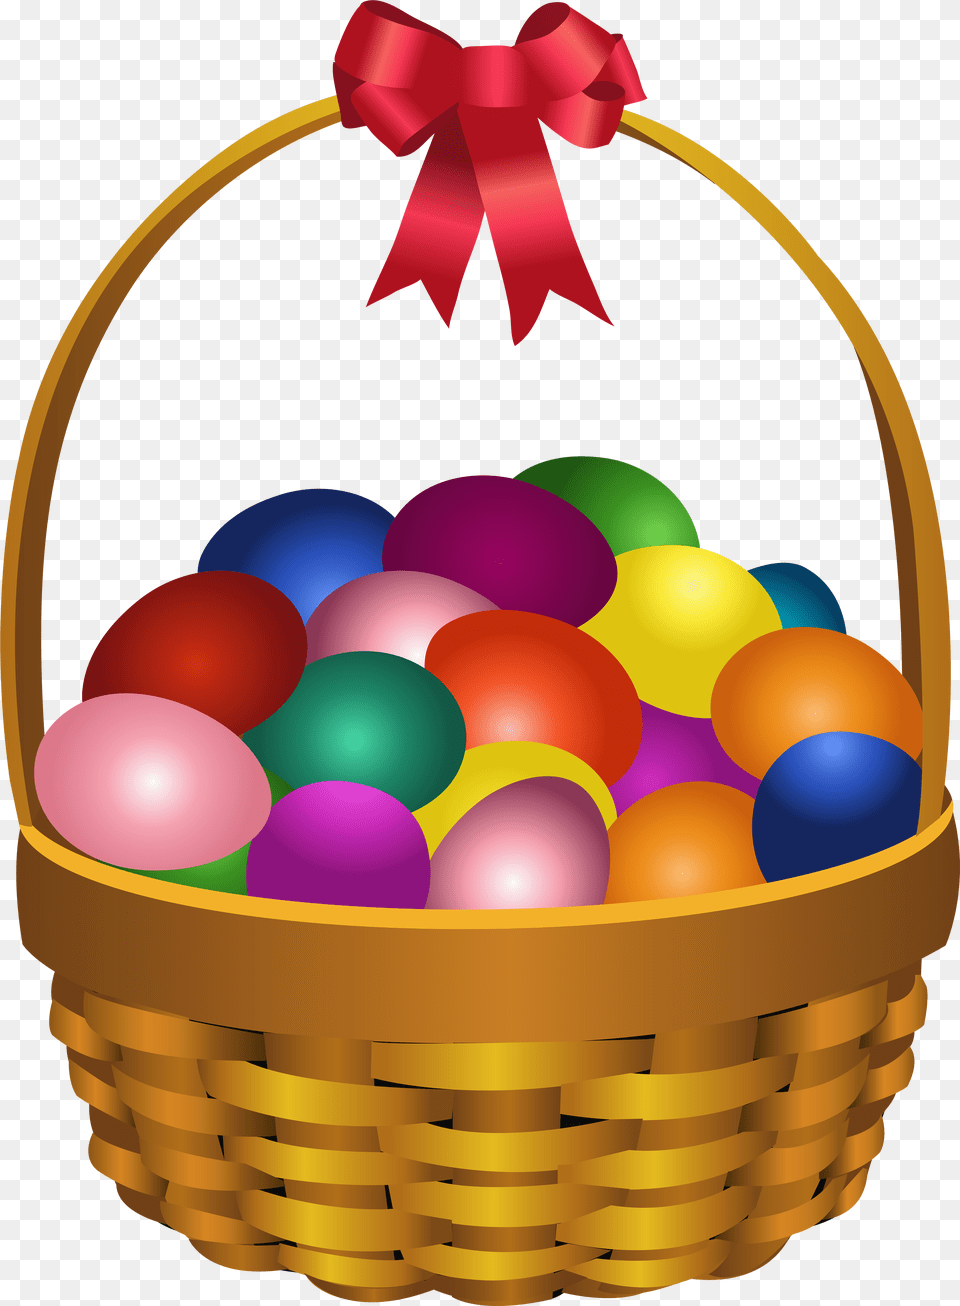 Easter Eggs In Basket Transparent Clip Art Image Fruit Basket Clip Art, Food, Balloon Free Png Download